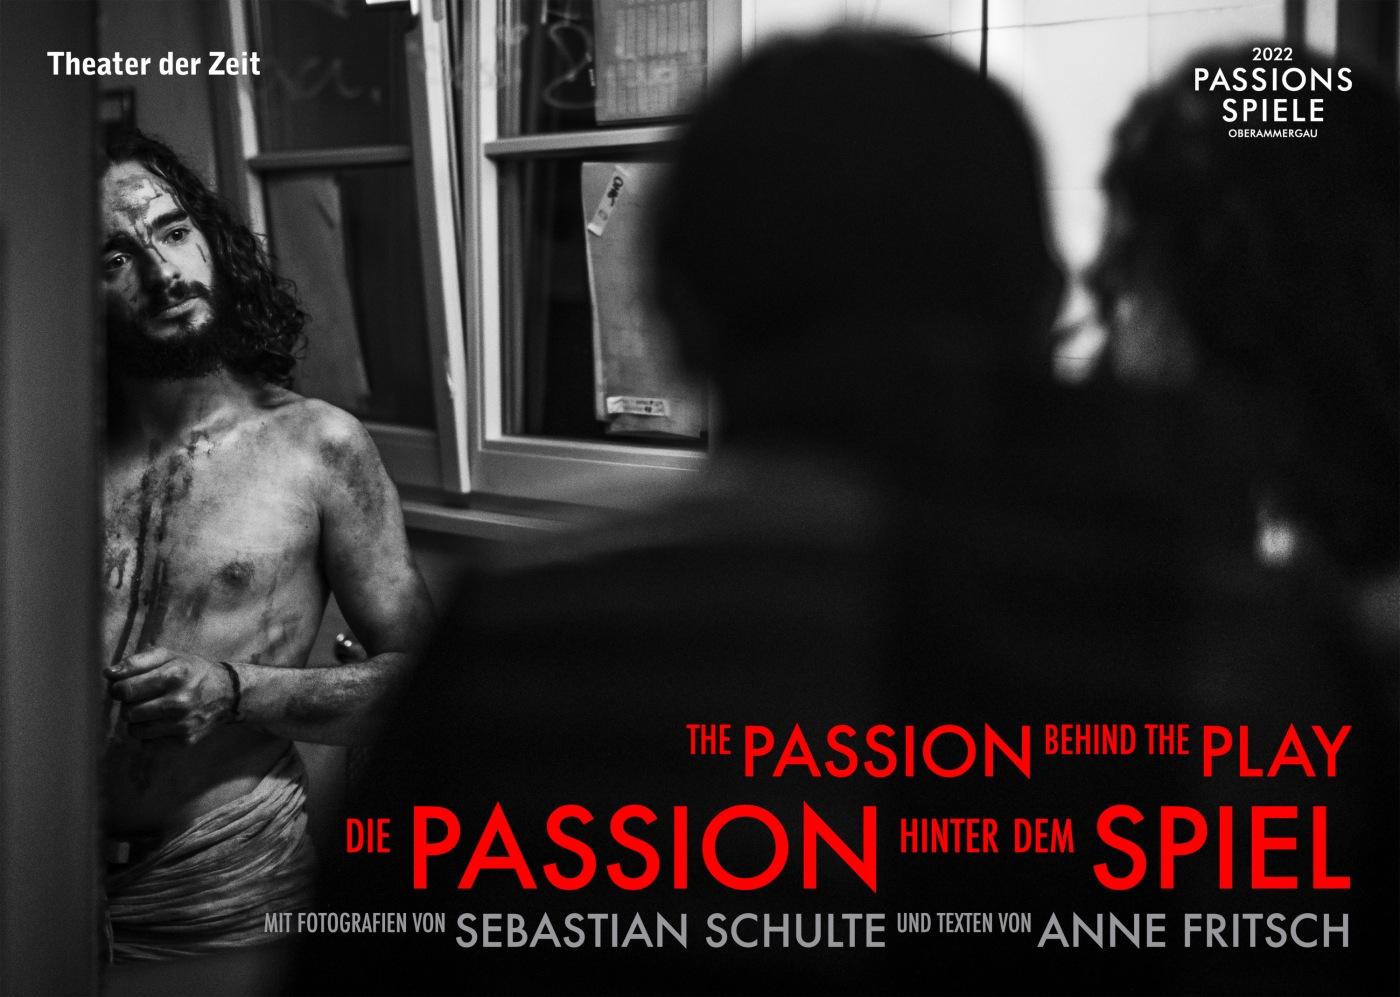 "Die Passion hinter dem Spiel"